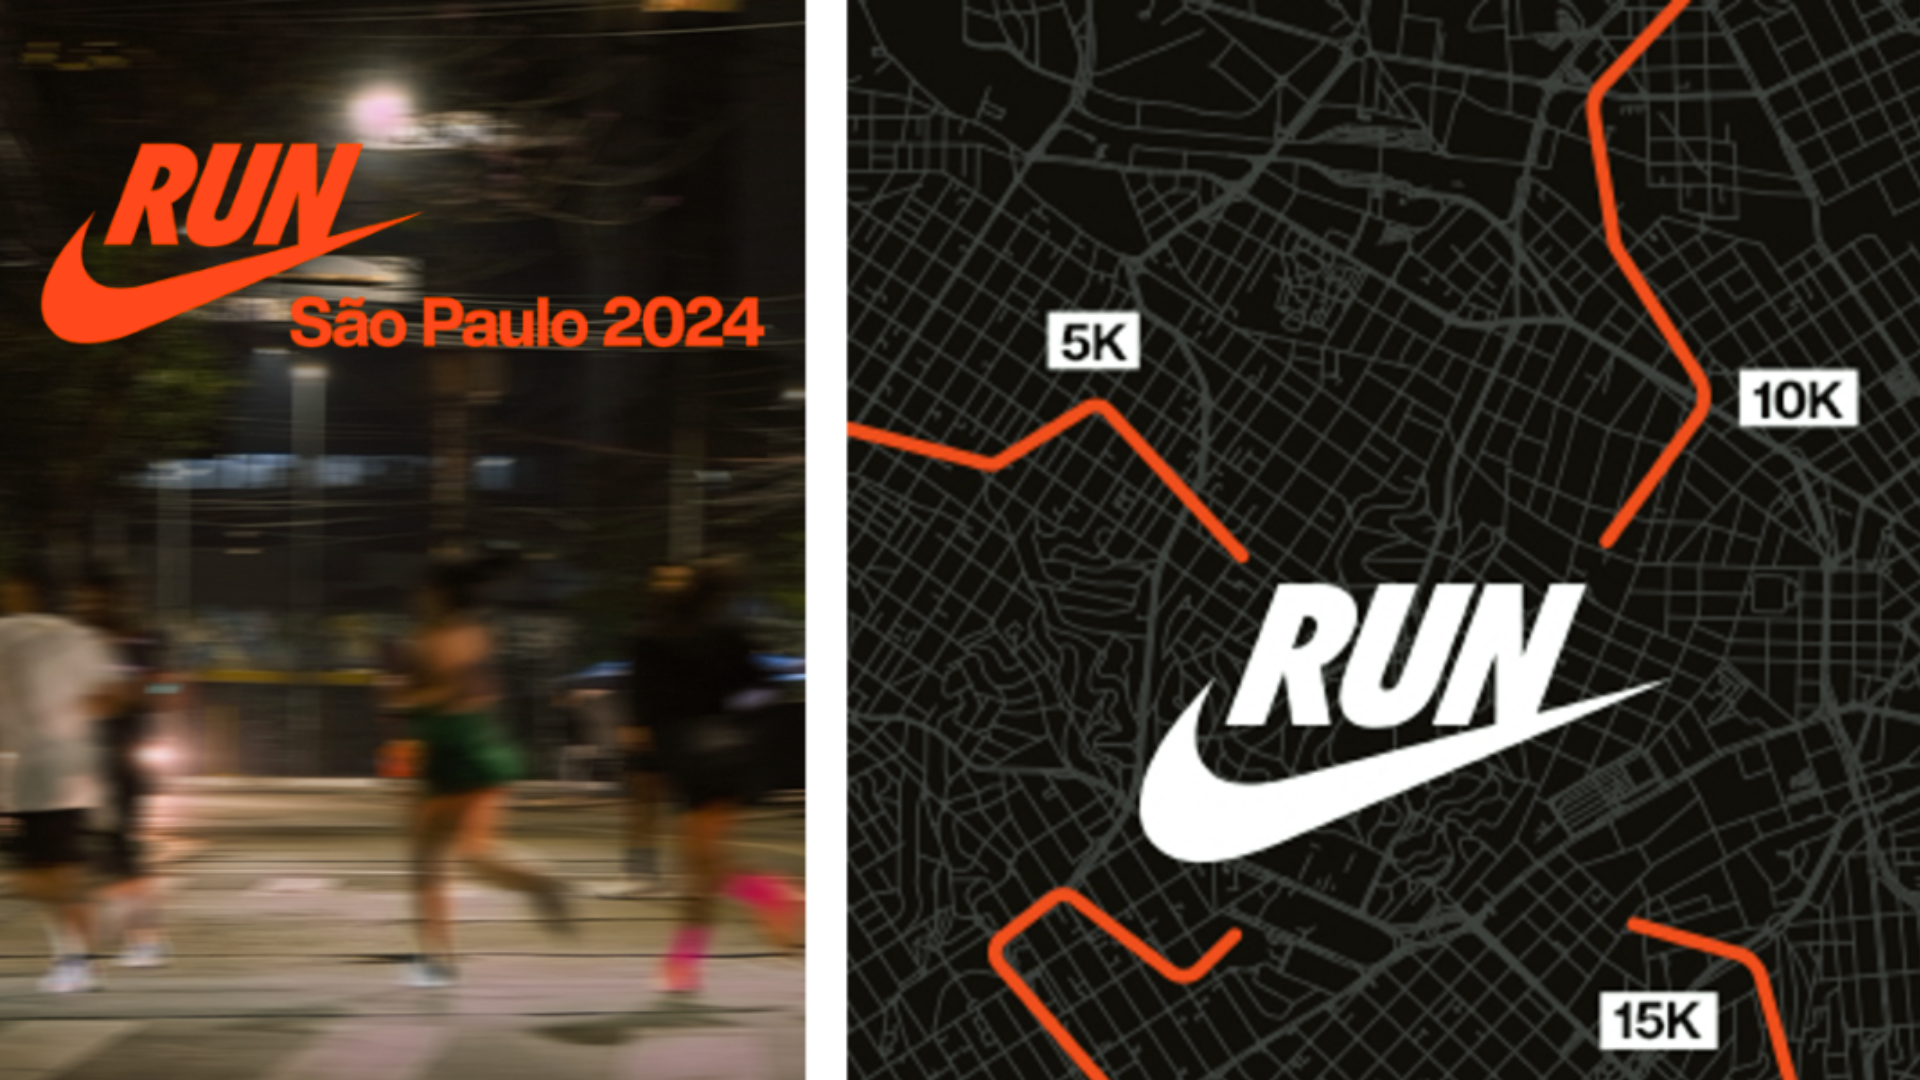 Nike São Paulo Run retorna em 2024 com formato inovador e múltiplos pontos de largada